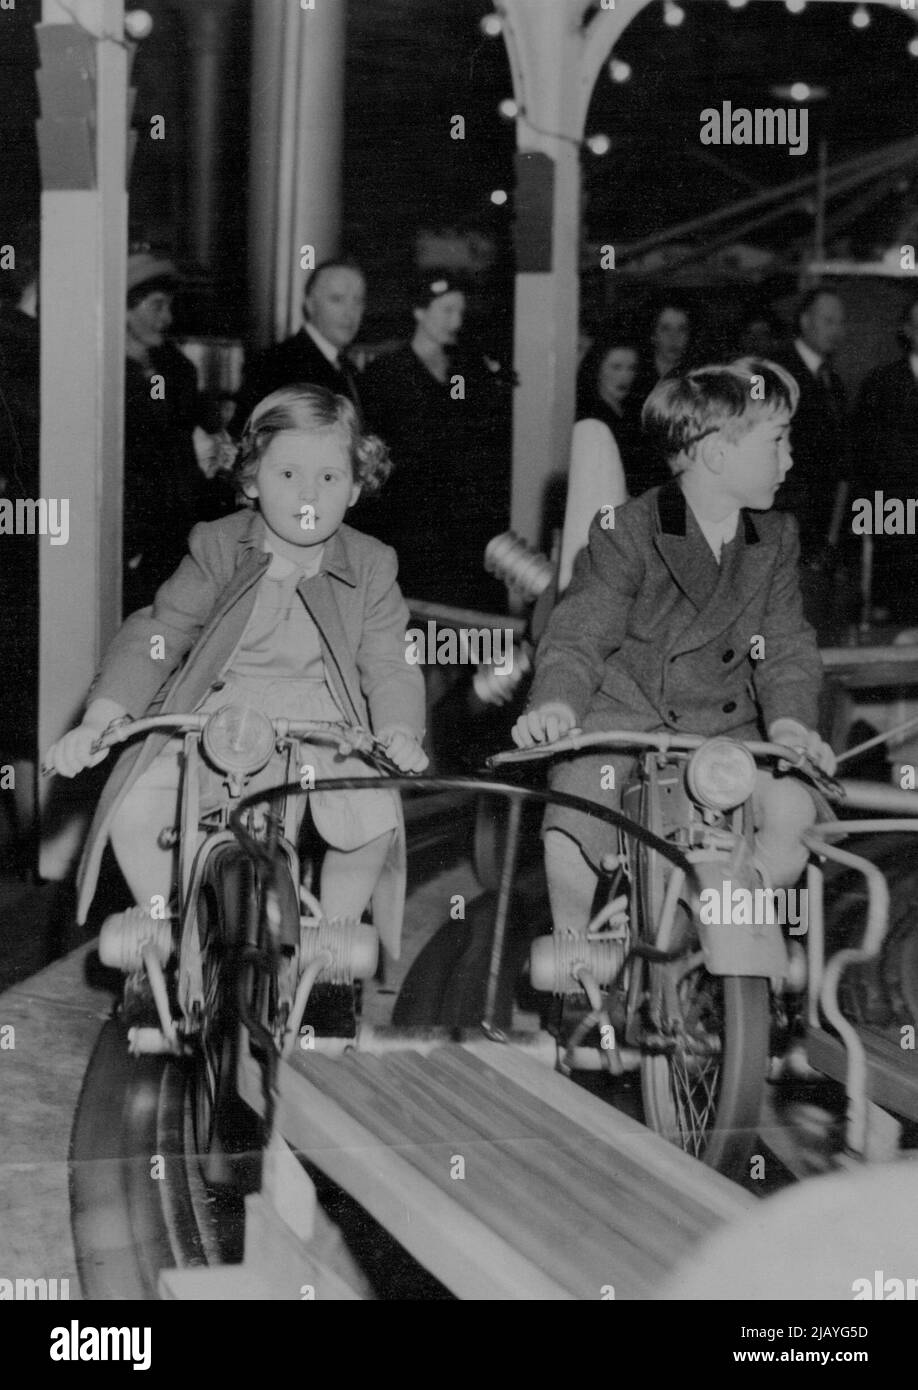 Joy-Ride per un Principe -- il Principe William, figlio maggiore del Duca di Gloucester, corre con un amico sulla rotonda in miniatura al circo olimpico e al funfair che ha visitato con suo fratello, il Principe Richard. Febbraio 04, 1948. Foto Stock